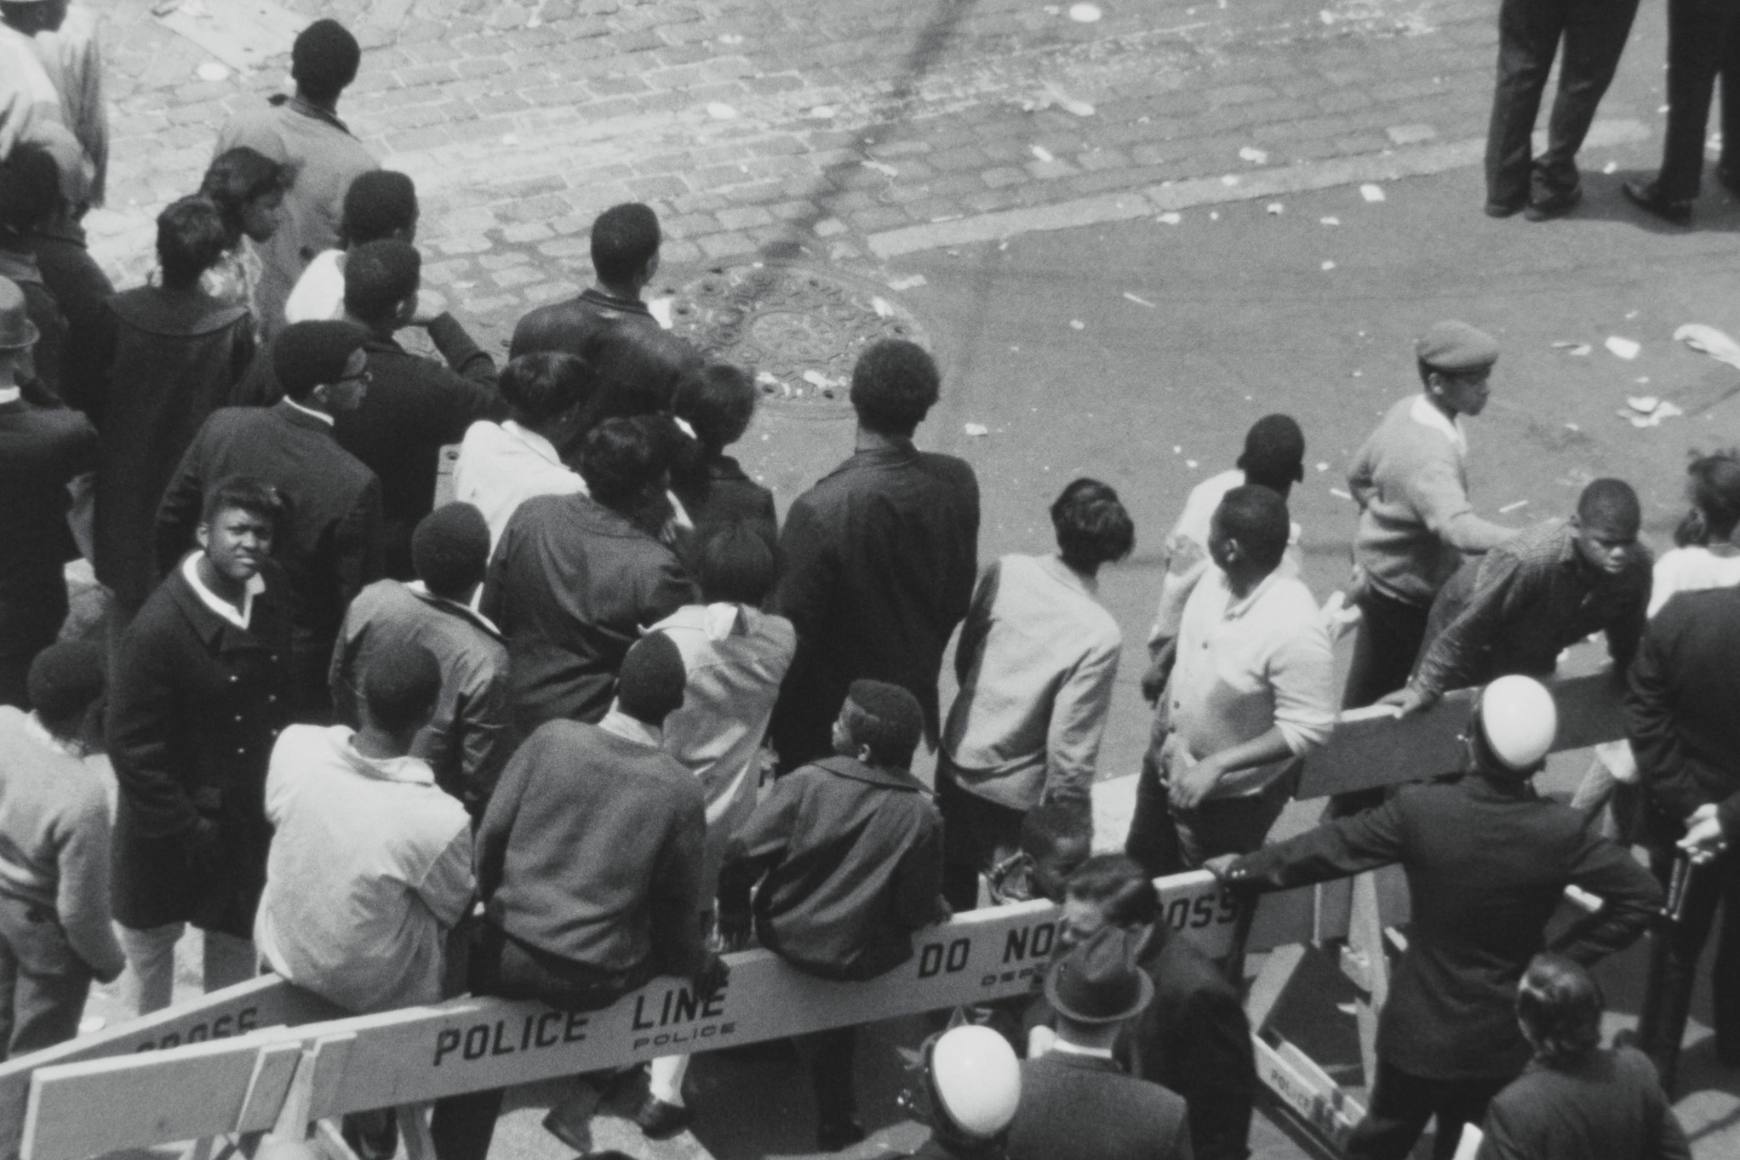 Uma visão panorâmica em preto e branco de um grupo de pessoas na rua. Barricadas policiais delineiam o espaço.